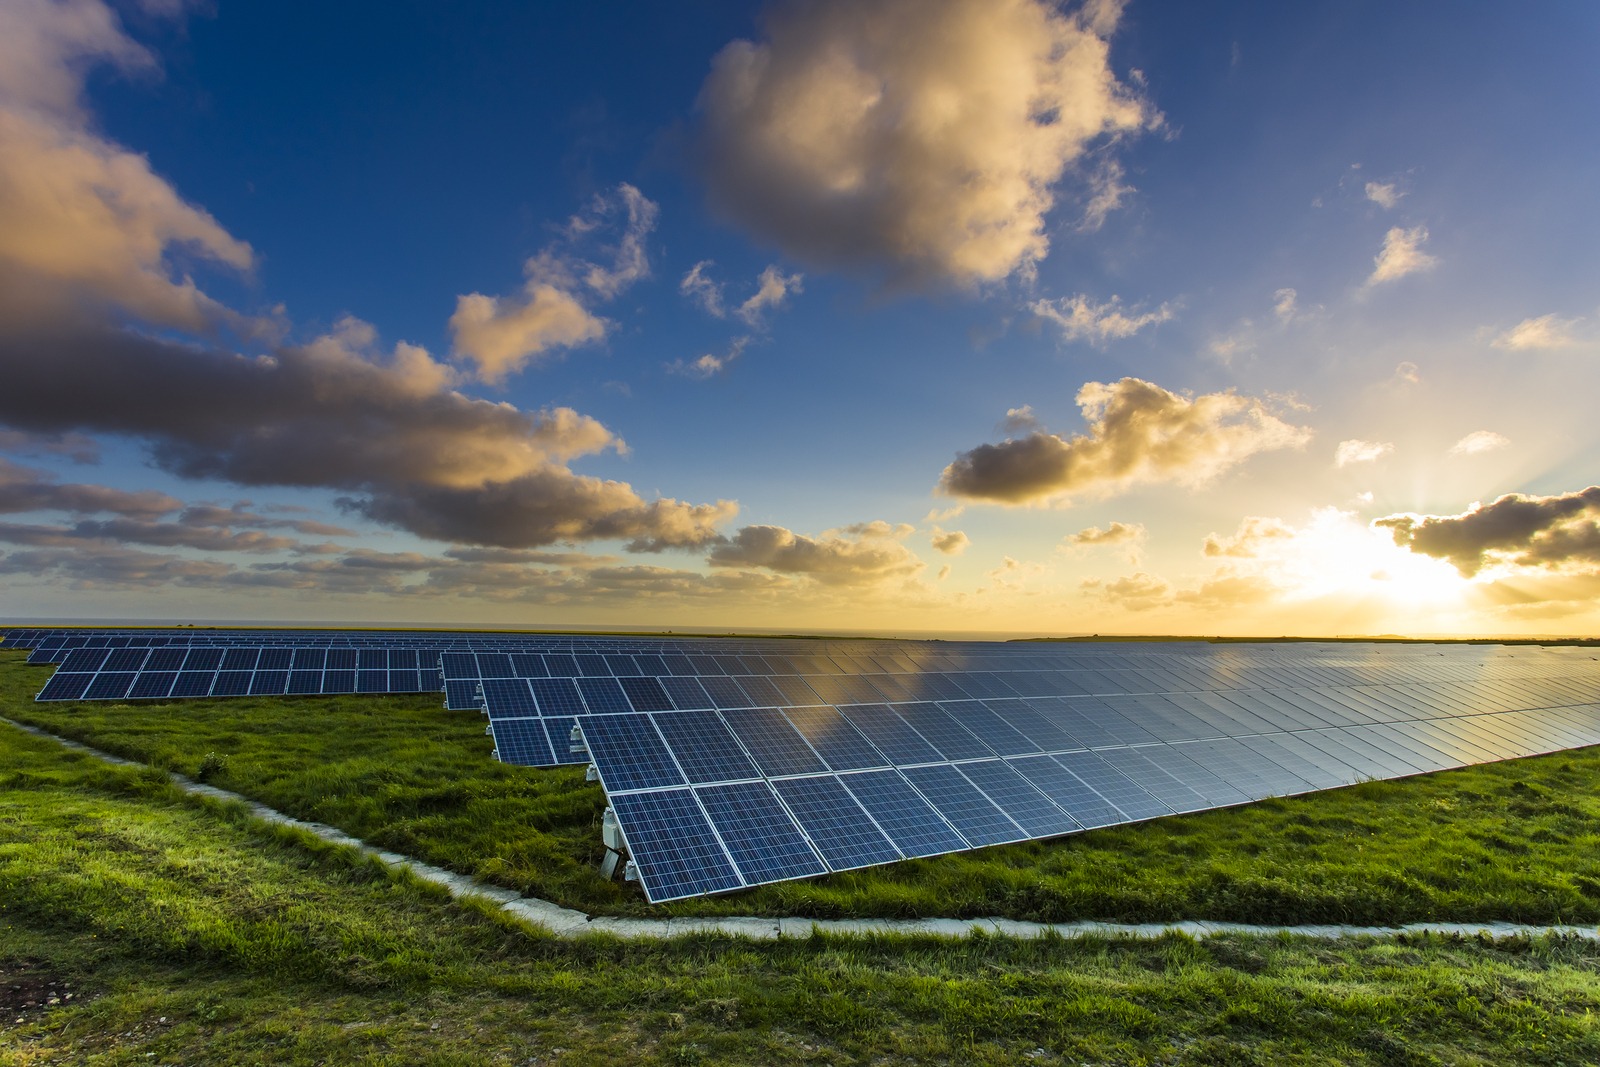 Energia solar: saiba como funciona, as vantagens e as principais dúvidas